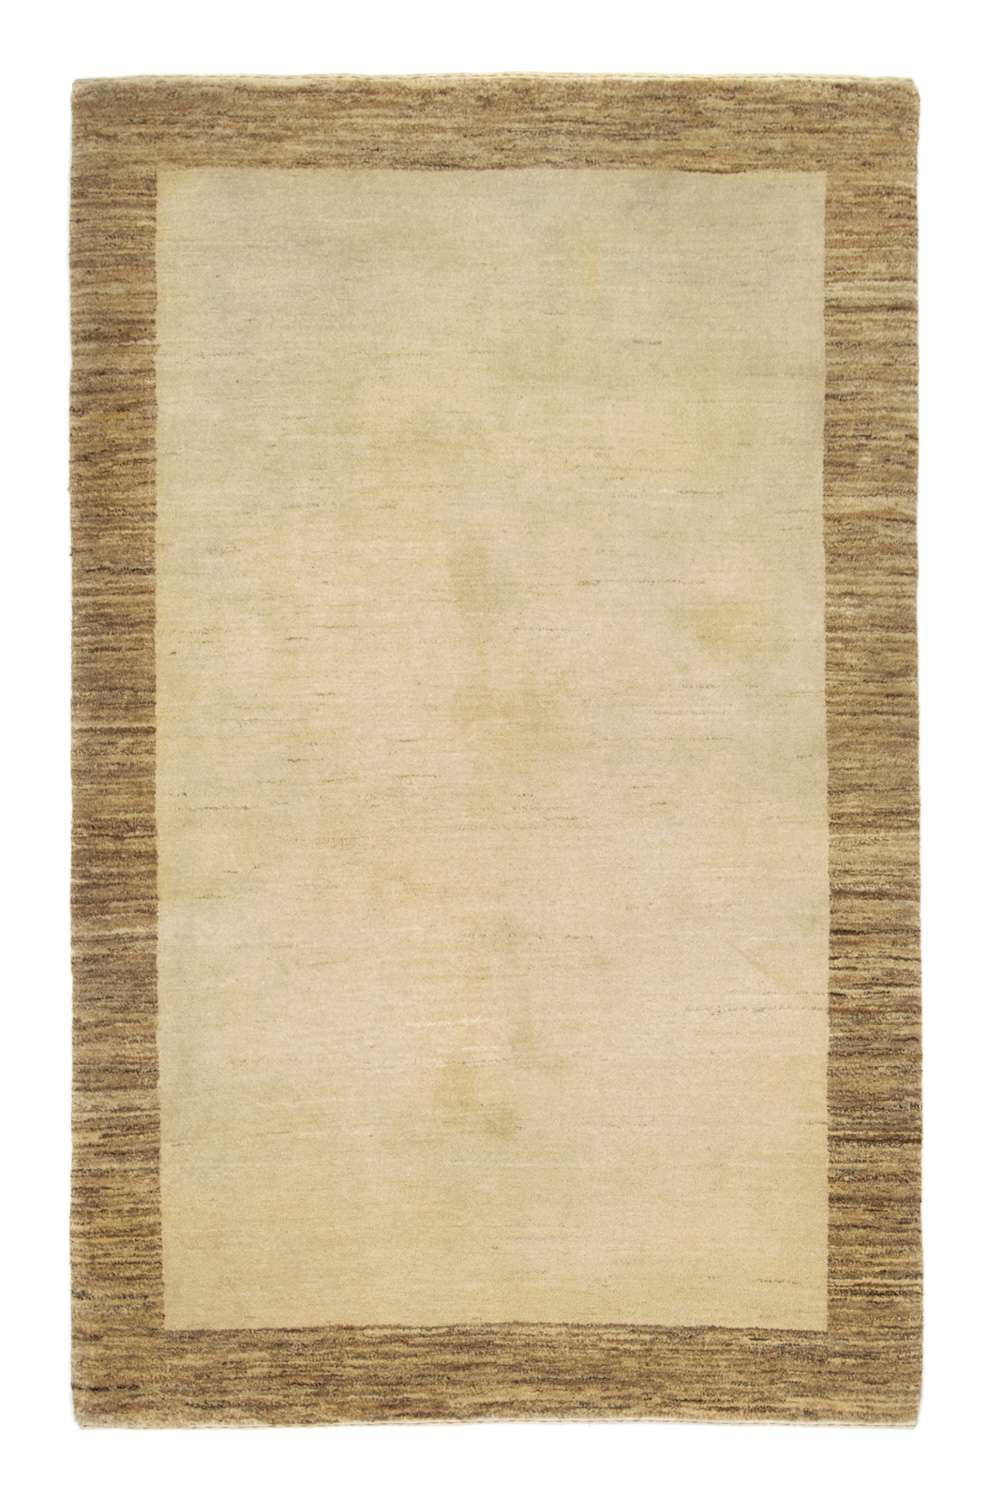 Gabbeh teppe - Indus - 188 x 124 cm - beige